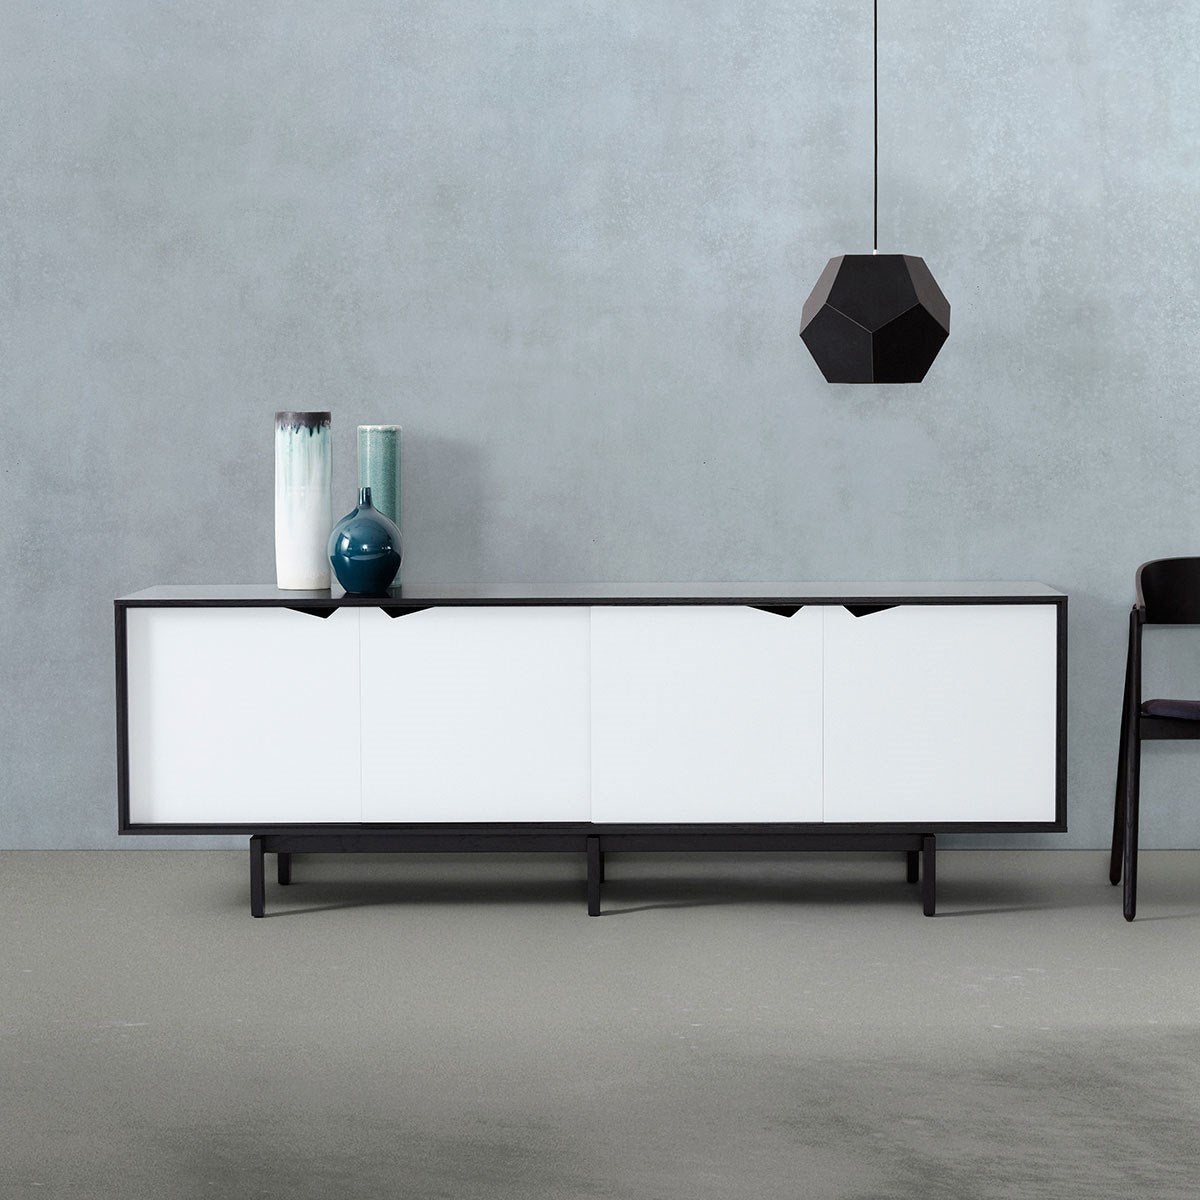 Andersen Furniture S1 skänk svart, vita lådor, 200 cm